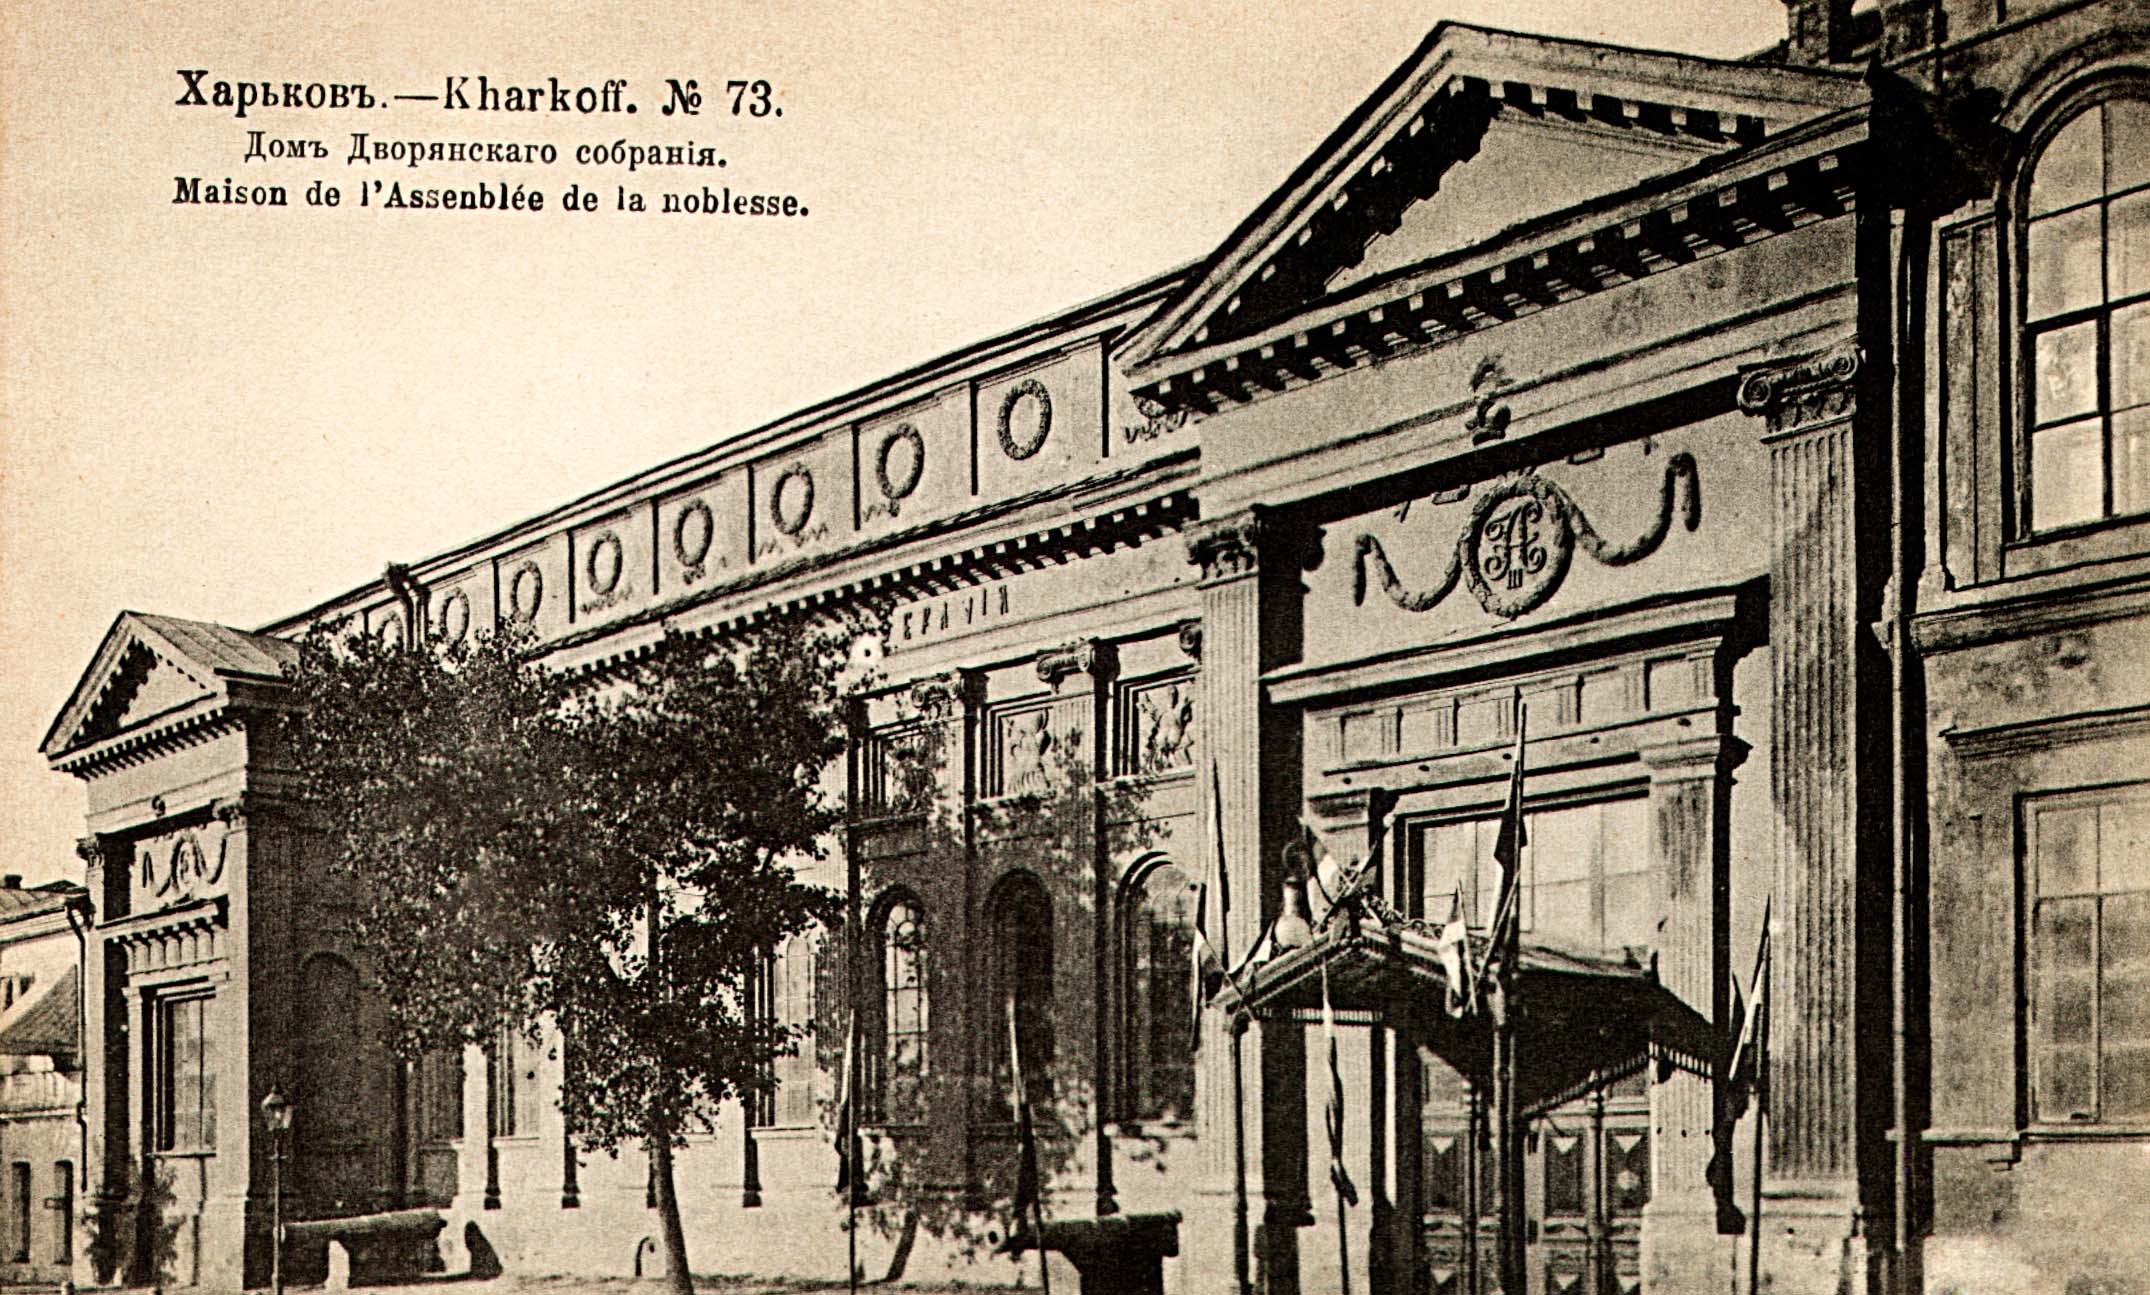 Здание дворянского собрания в городе Харькове. Открытка начала XX столетия